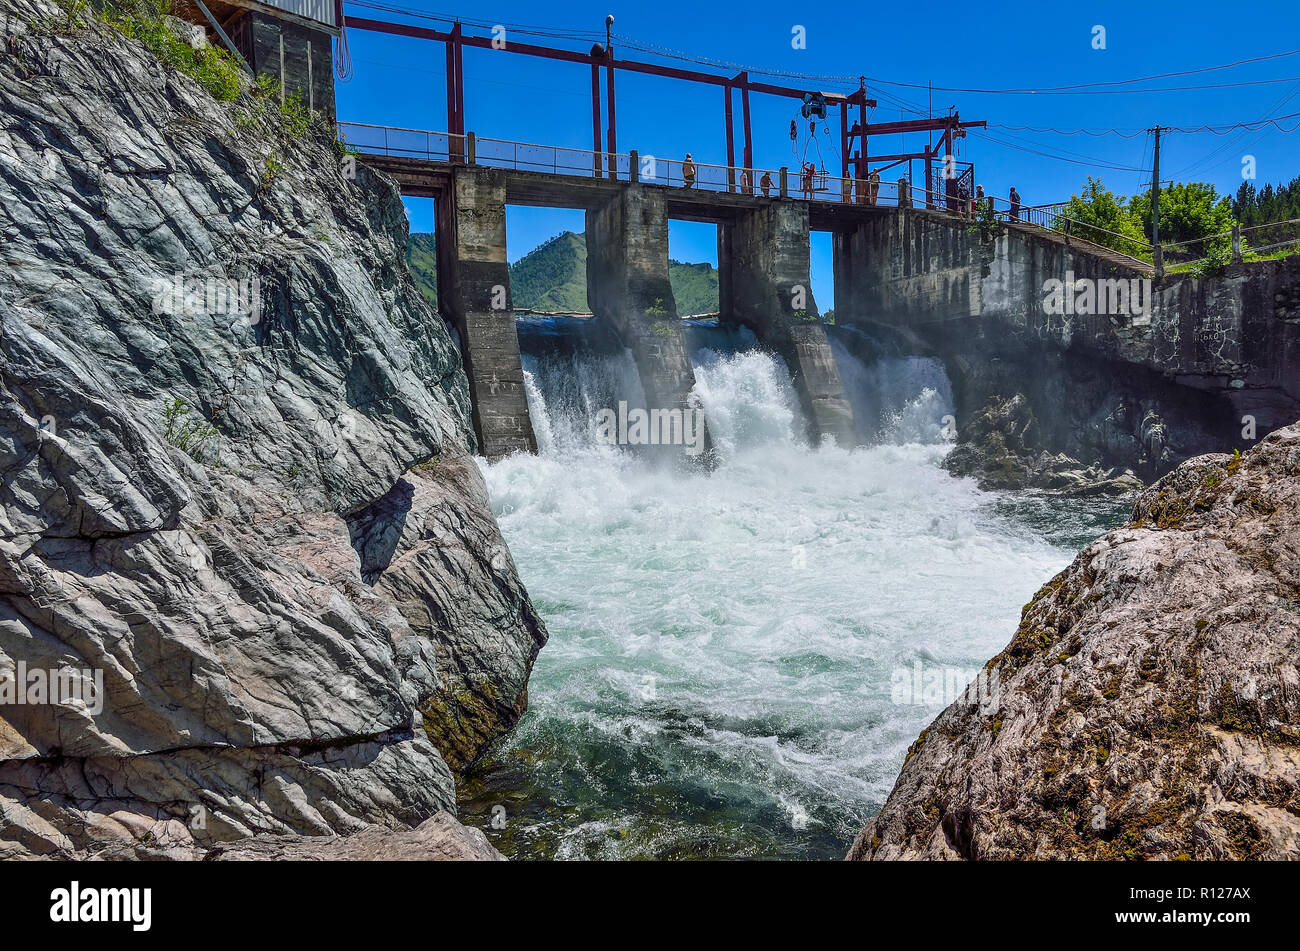 Villaggio Chemal, Altai repubblica, Russia - Luglio 7, 2018: vecchia centrale idroelettrica di fiume Chemal (Altai montagne). Vista del ponte, dam, cascata Foto Stock